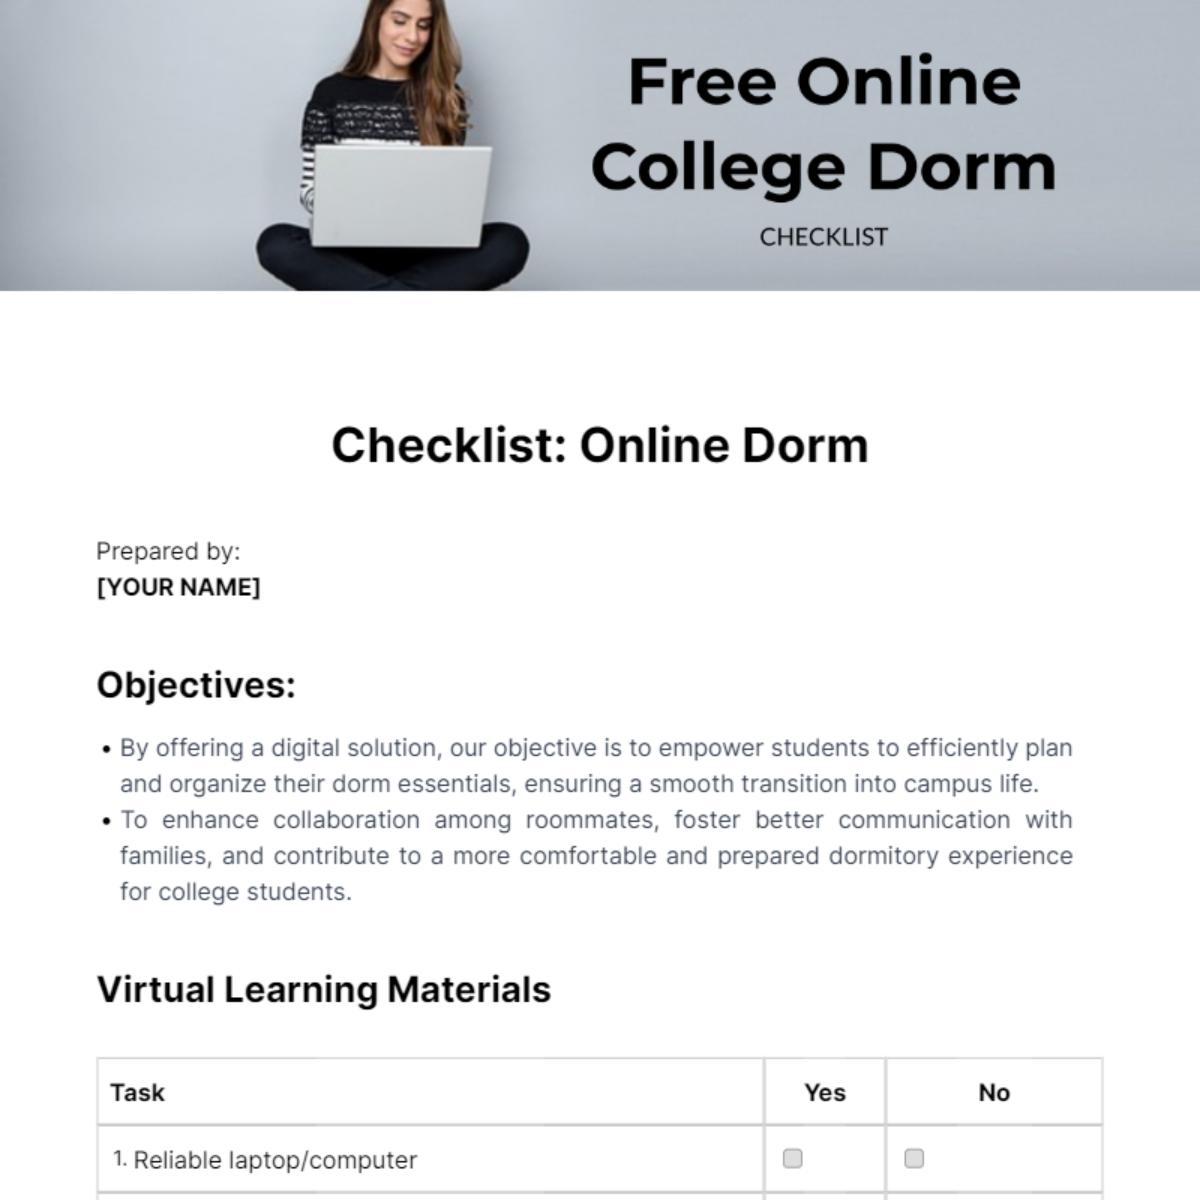 Free Online College Dorm Checklist Template